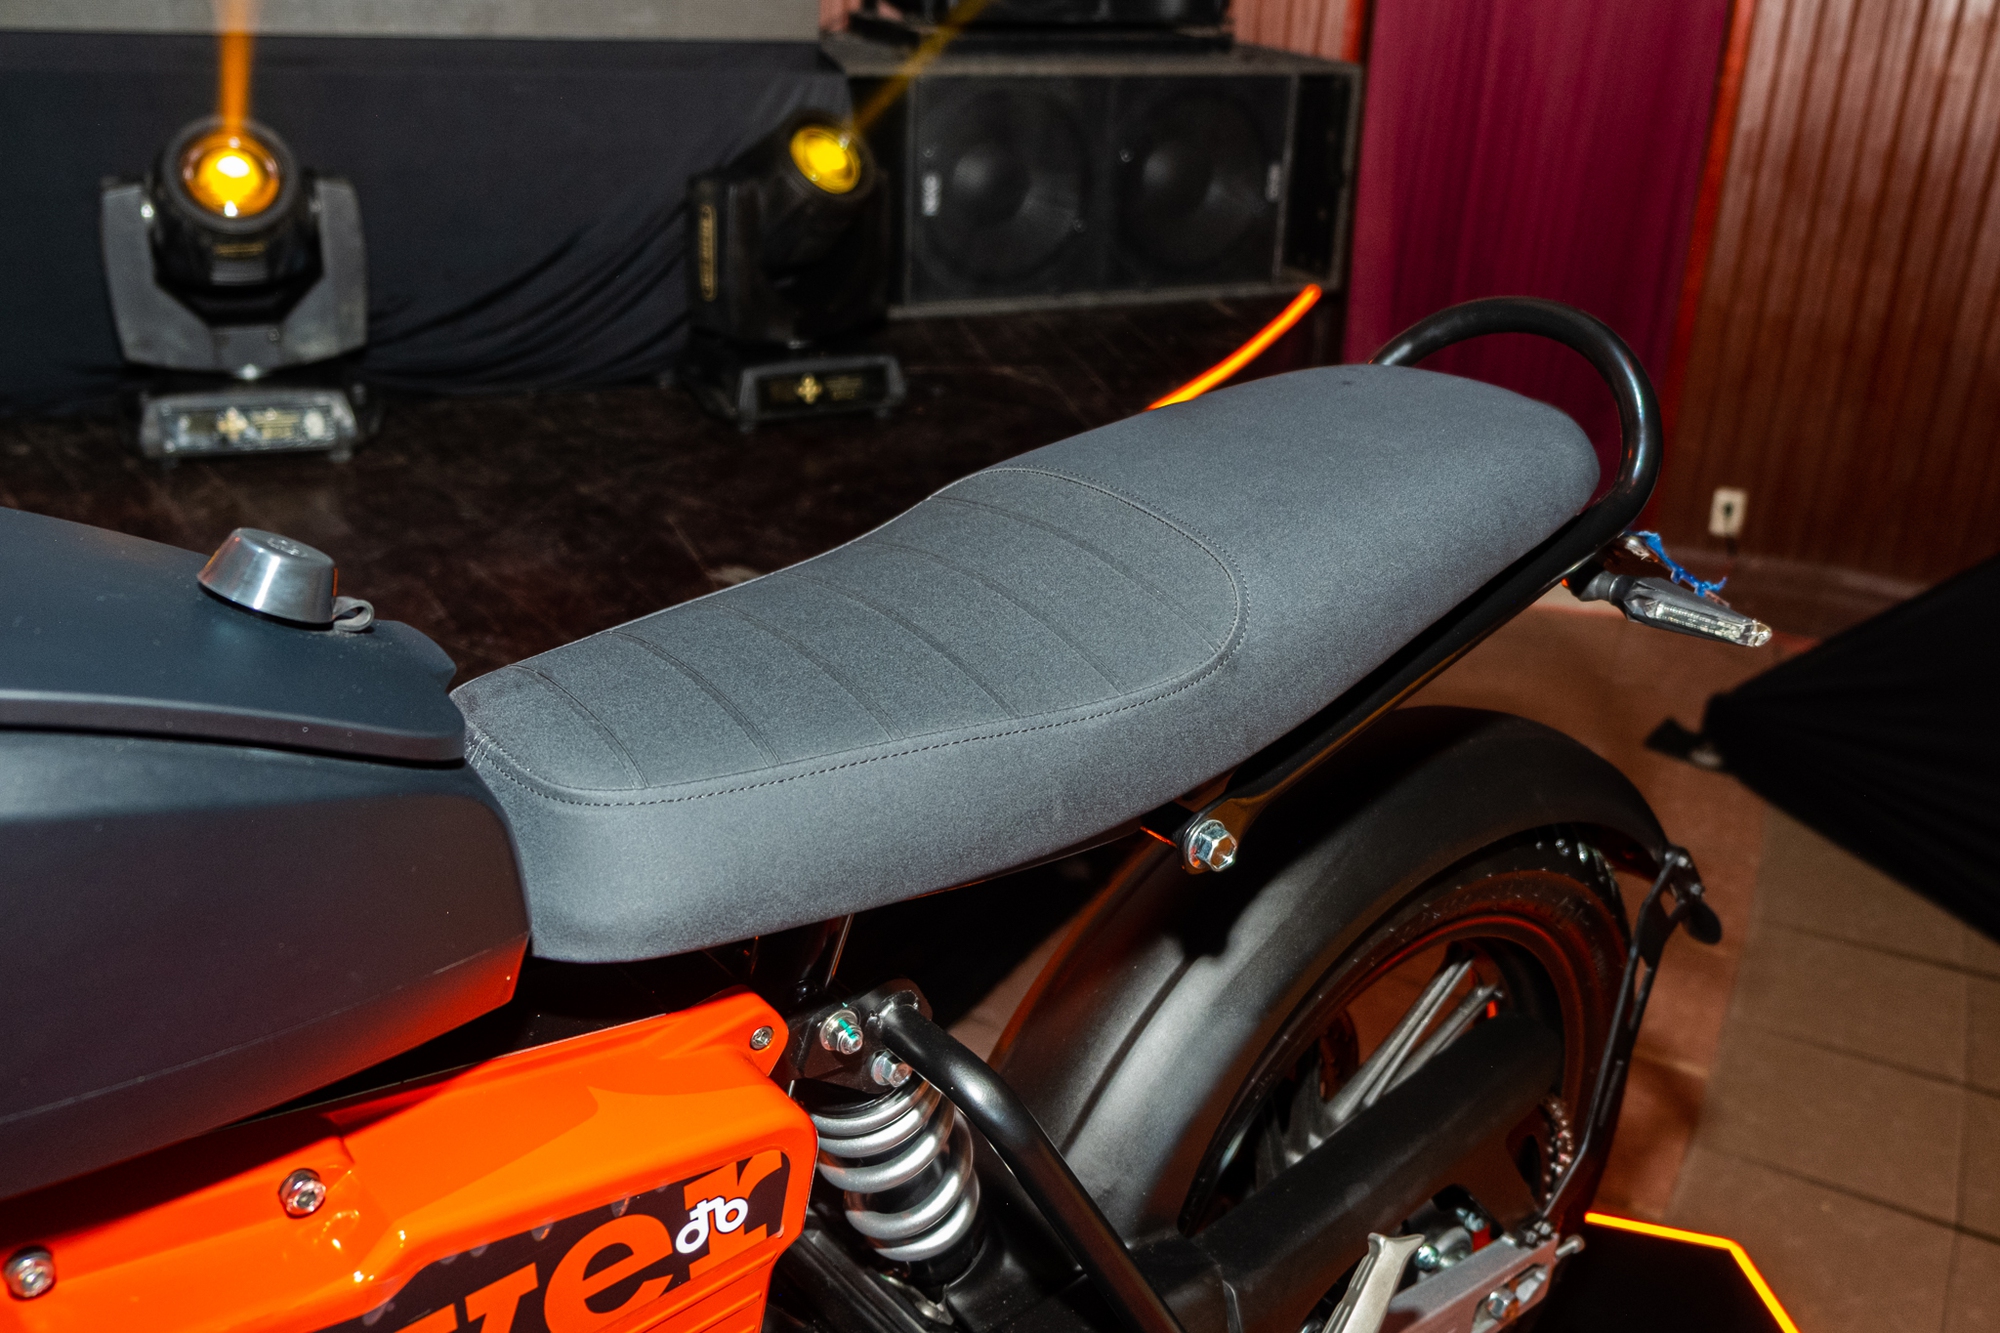 Ra mắt Dat Bike Weaver++: Giá 65,9 triệu đồng, dáng cổ điển, sạc nhanh chưa từng có tại Việt Nam - Ảnh 13.